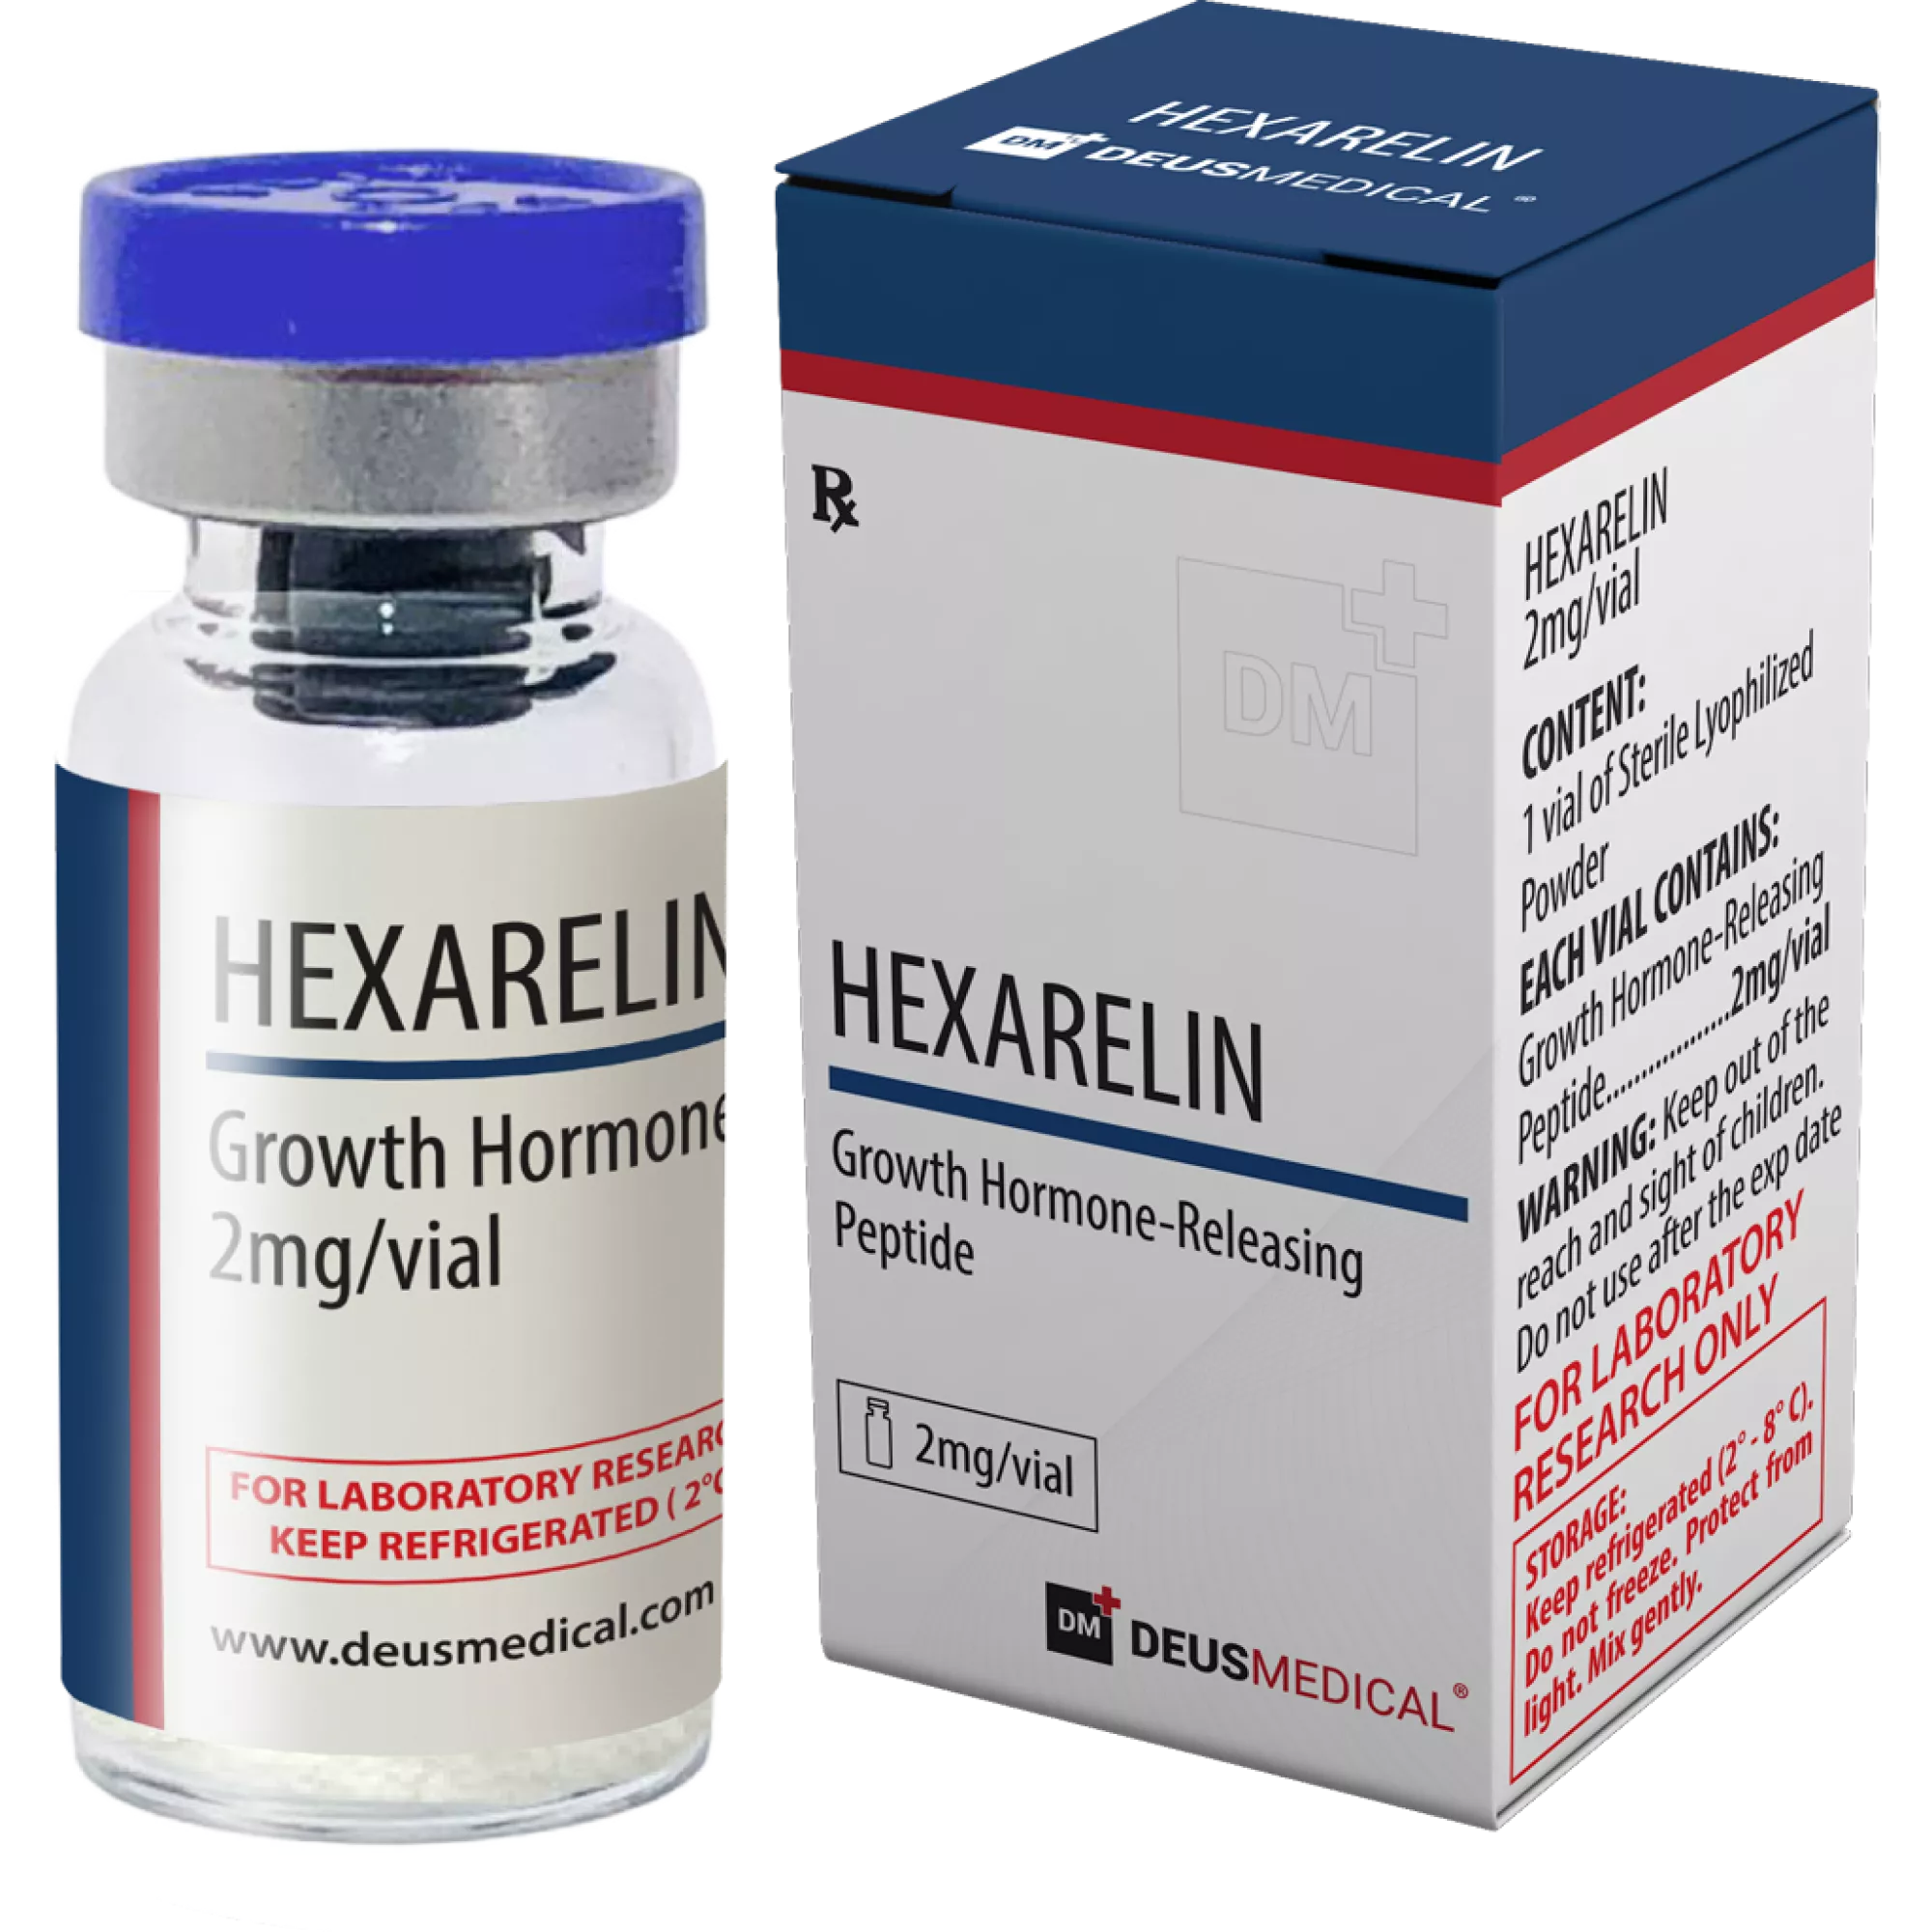 HEXARELIN (tillväxthormonfrisättande peptid), Deus Medical, köp steroider online - www.deuspower.shop